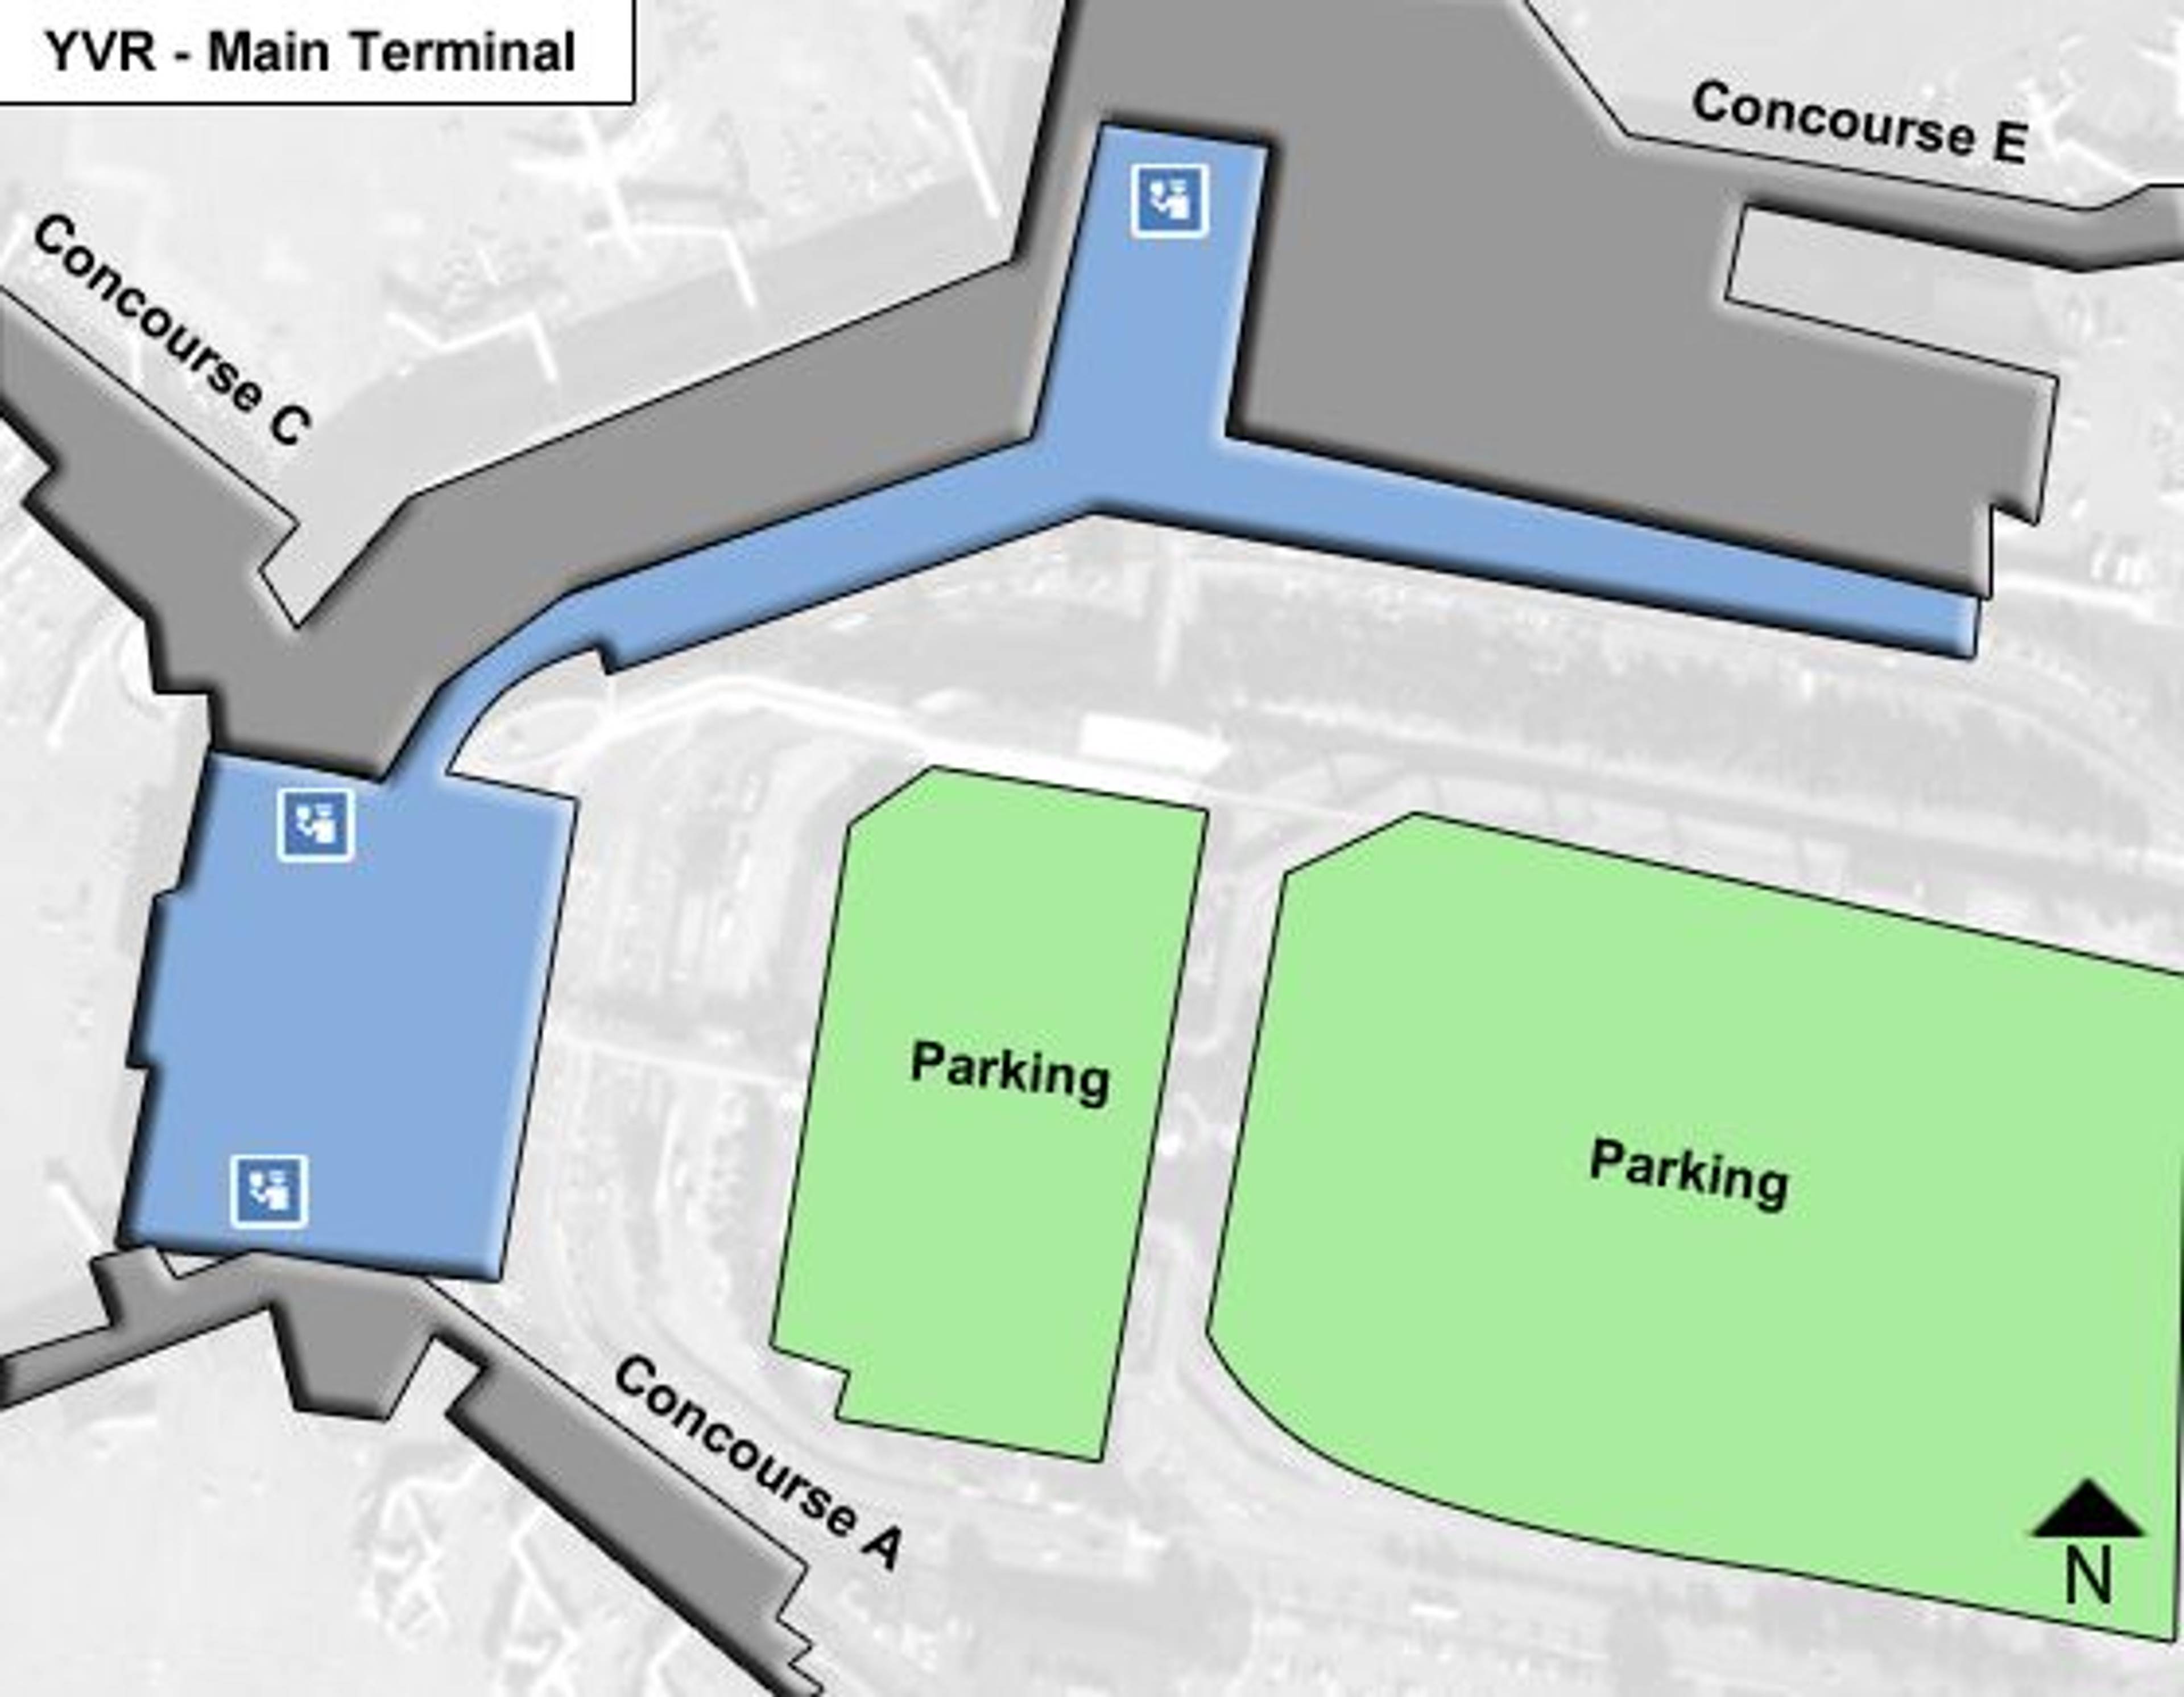 Richmond Airport Main Terminal Map